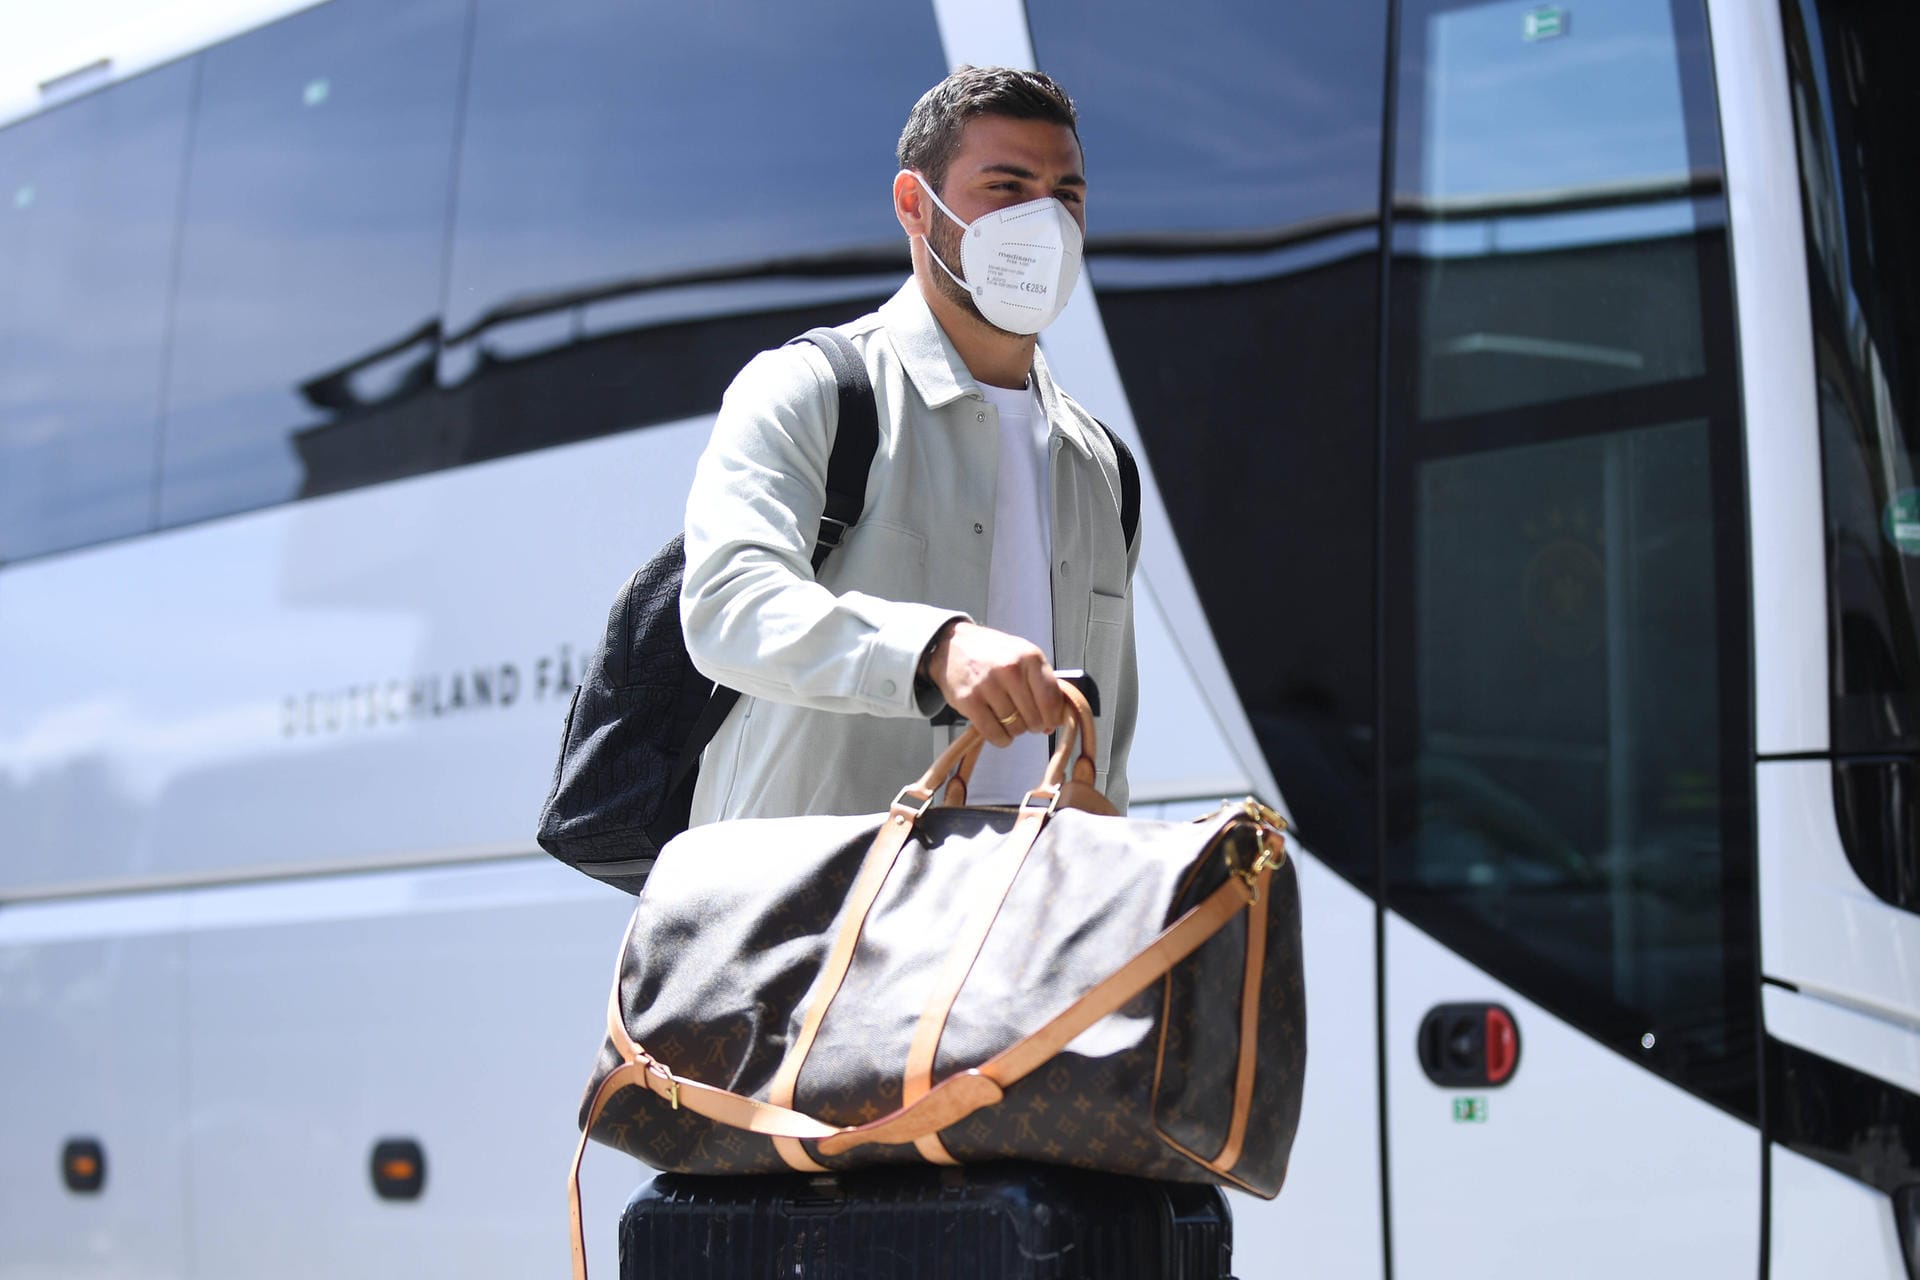 Kevin Volland: Der DFB-Rückkehrer zeigte bei seiner Ankunft in Österreich einen lässigen Look und seine Louis-Vuitton-Tasche.